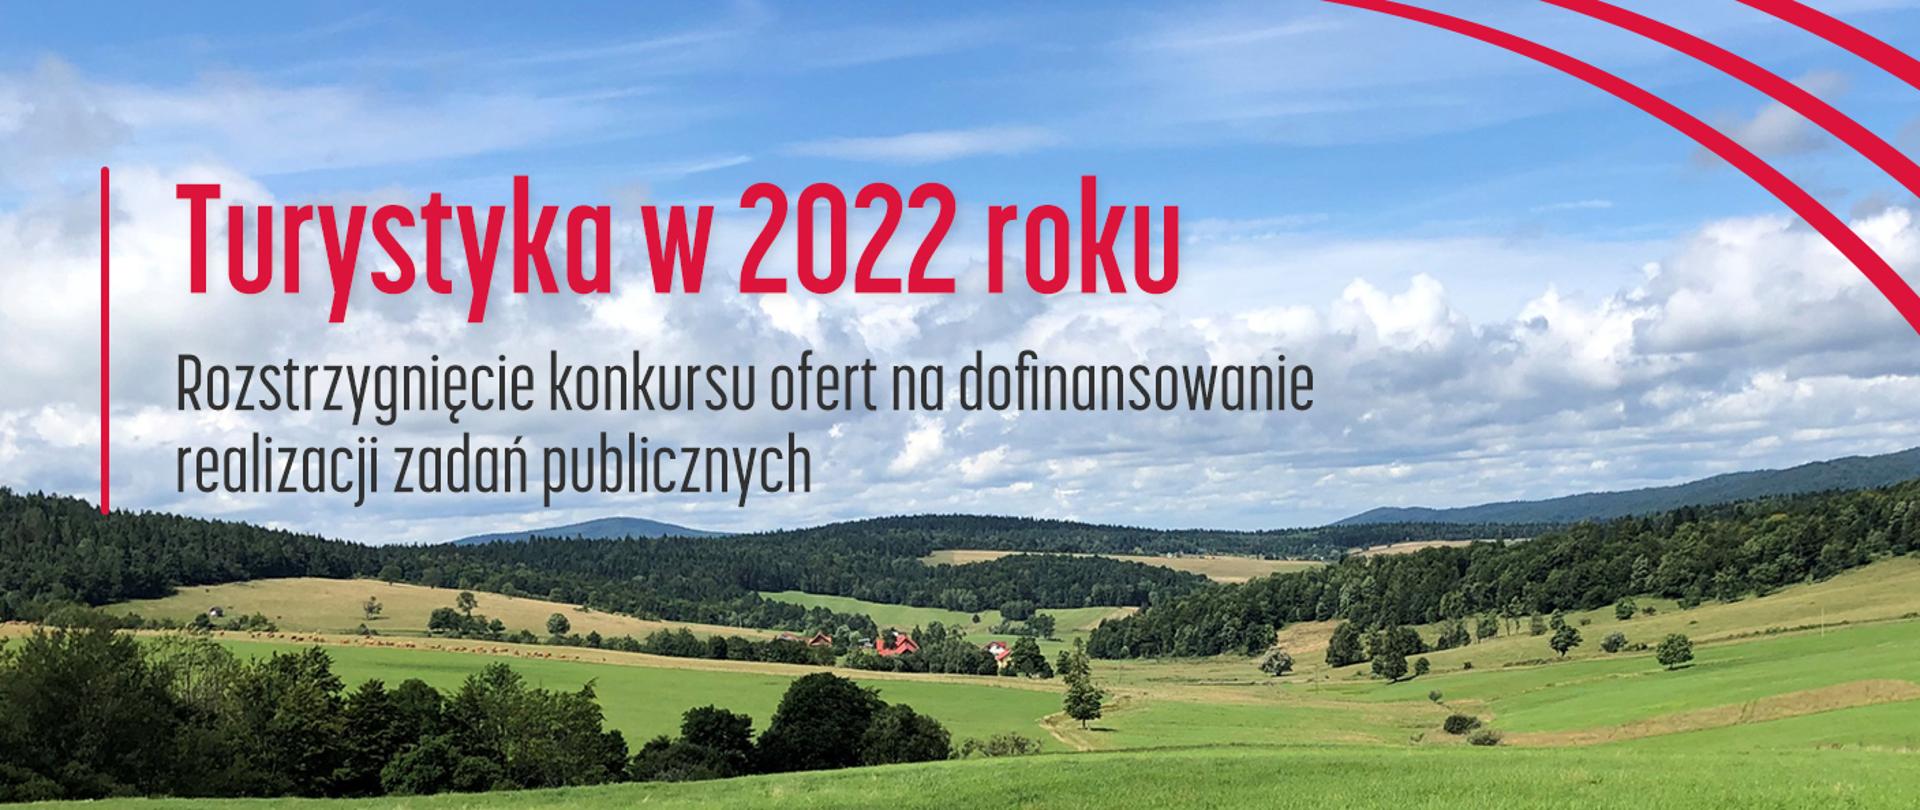 Turystyka 2022 - rozstrzygnięcie konkursu ofert na dofinansowanie realizacji zadań publicznych